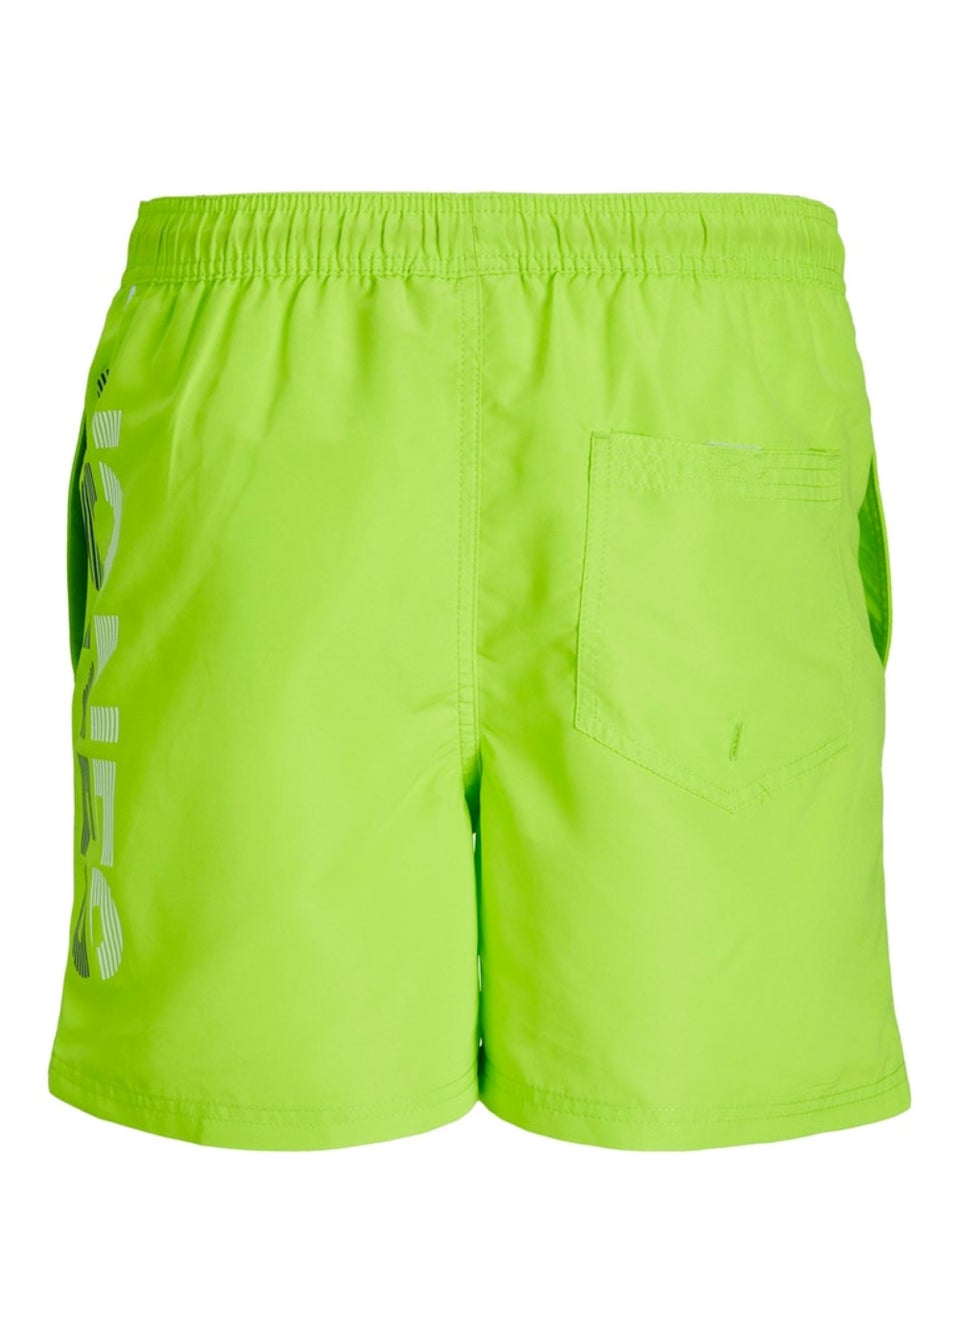 Jack & Jones Junior Green Swim Shorts (6-16yrs) - Matalan